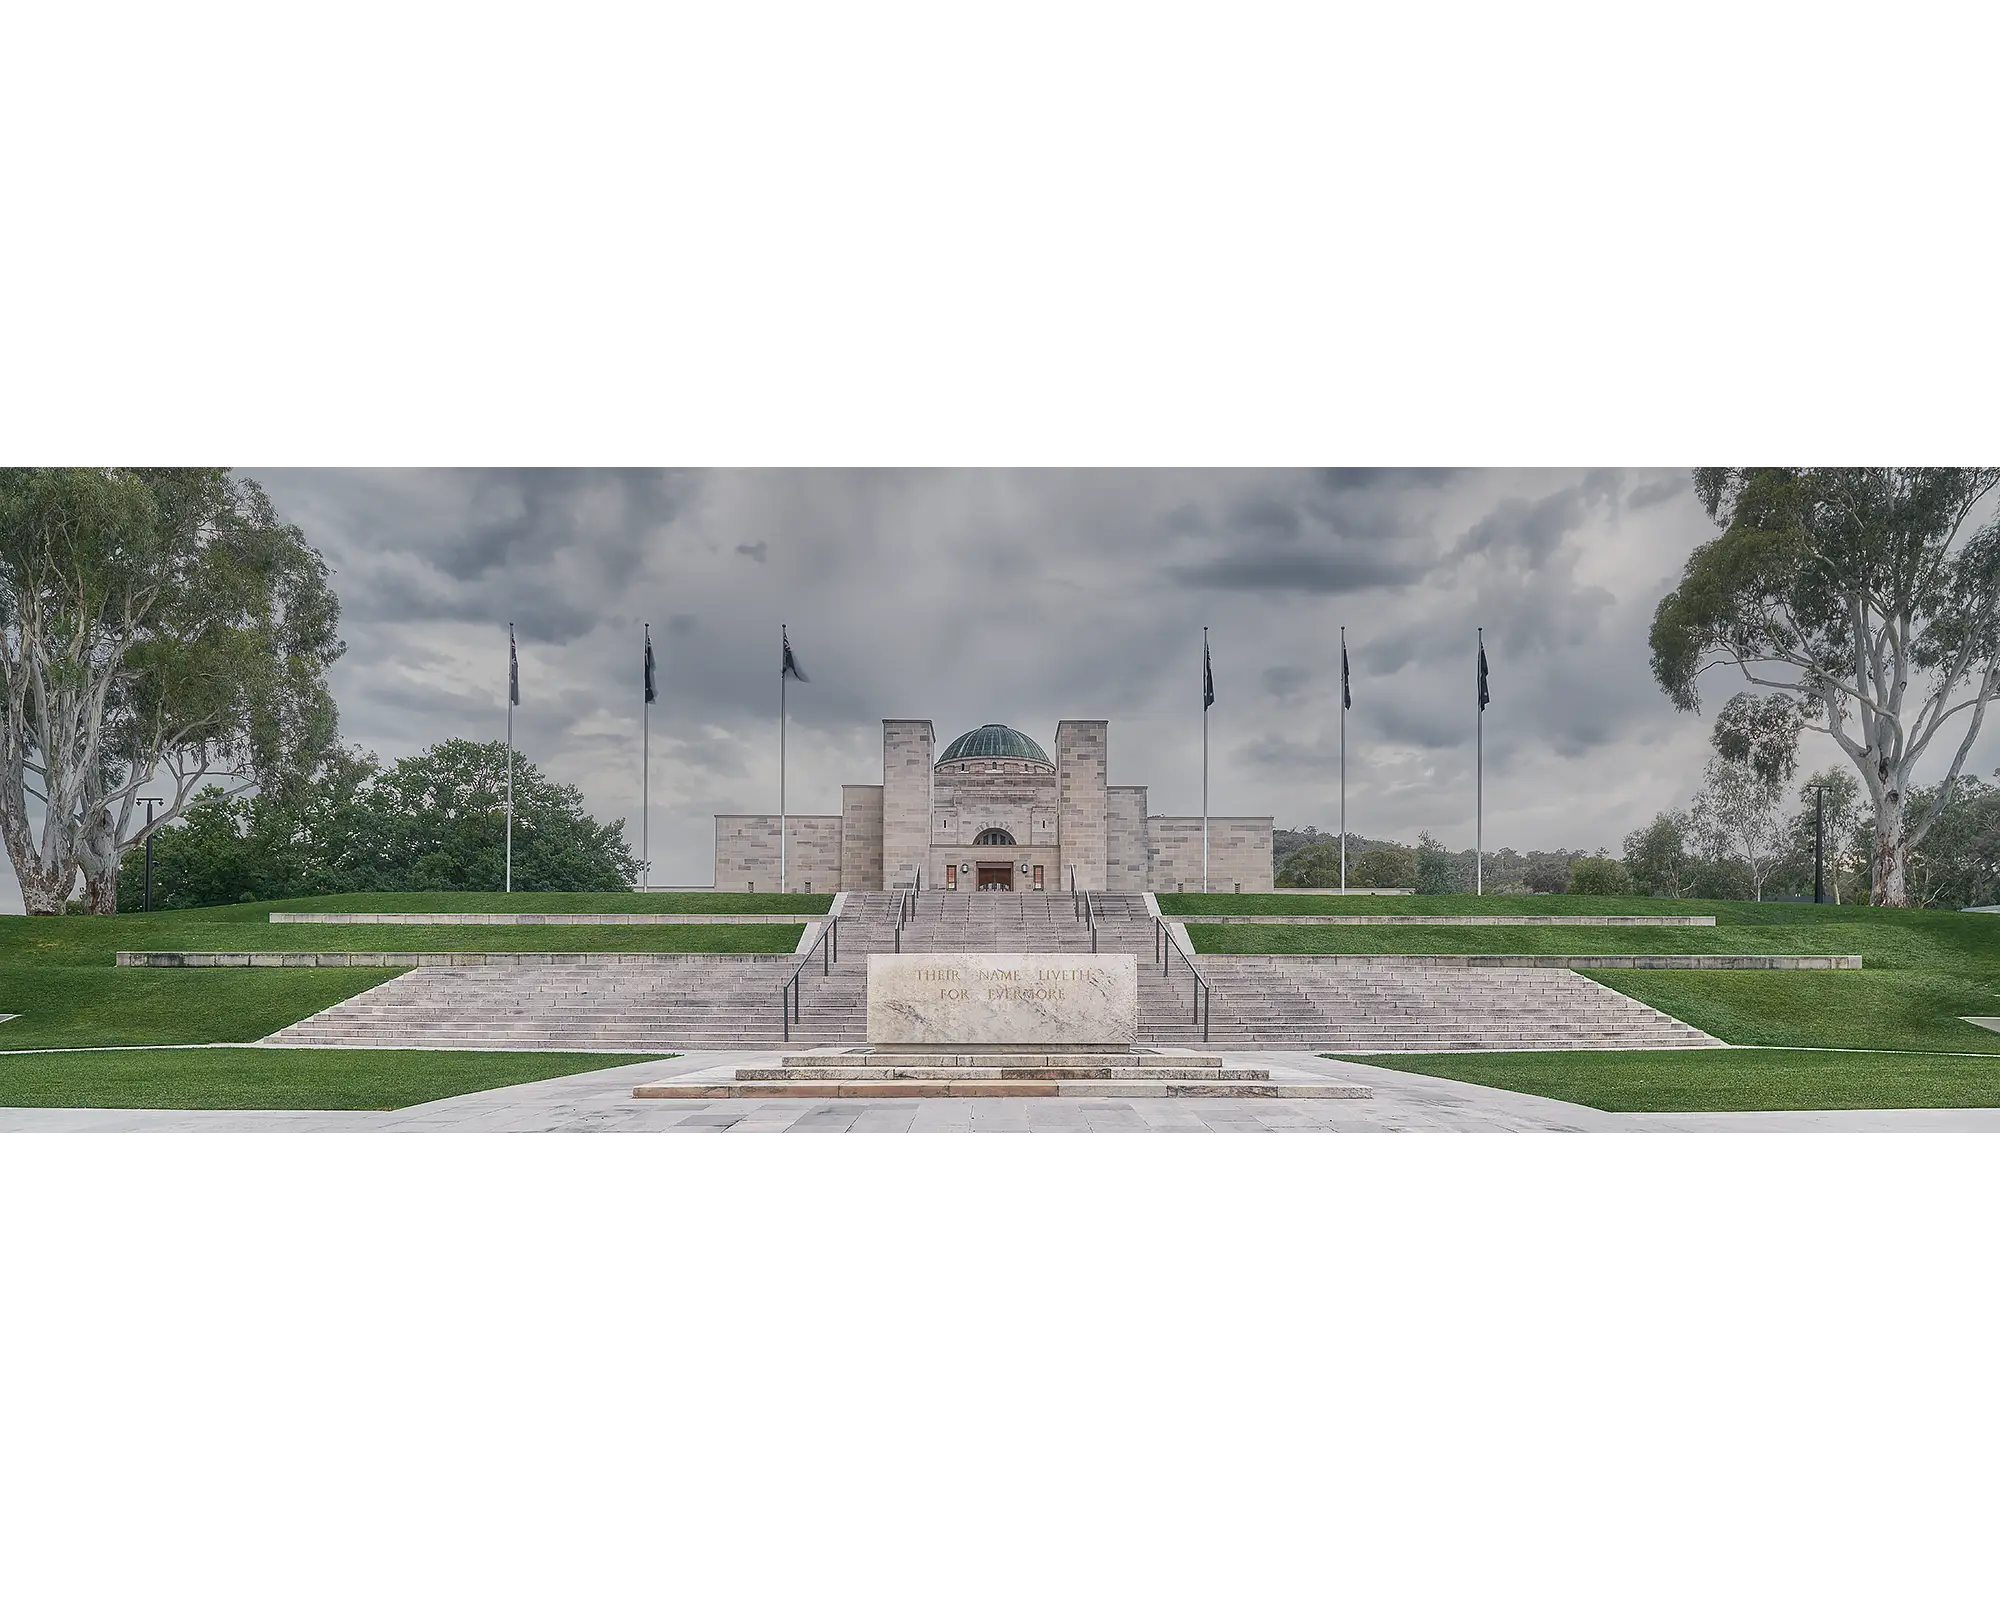 For The Fallen. Australian War Memorial, Canberra.